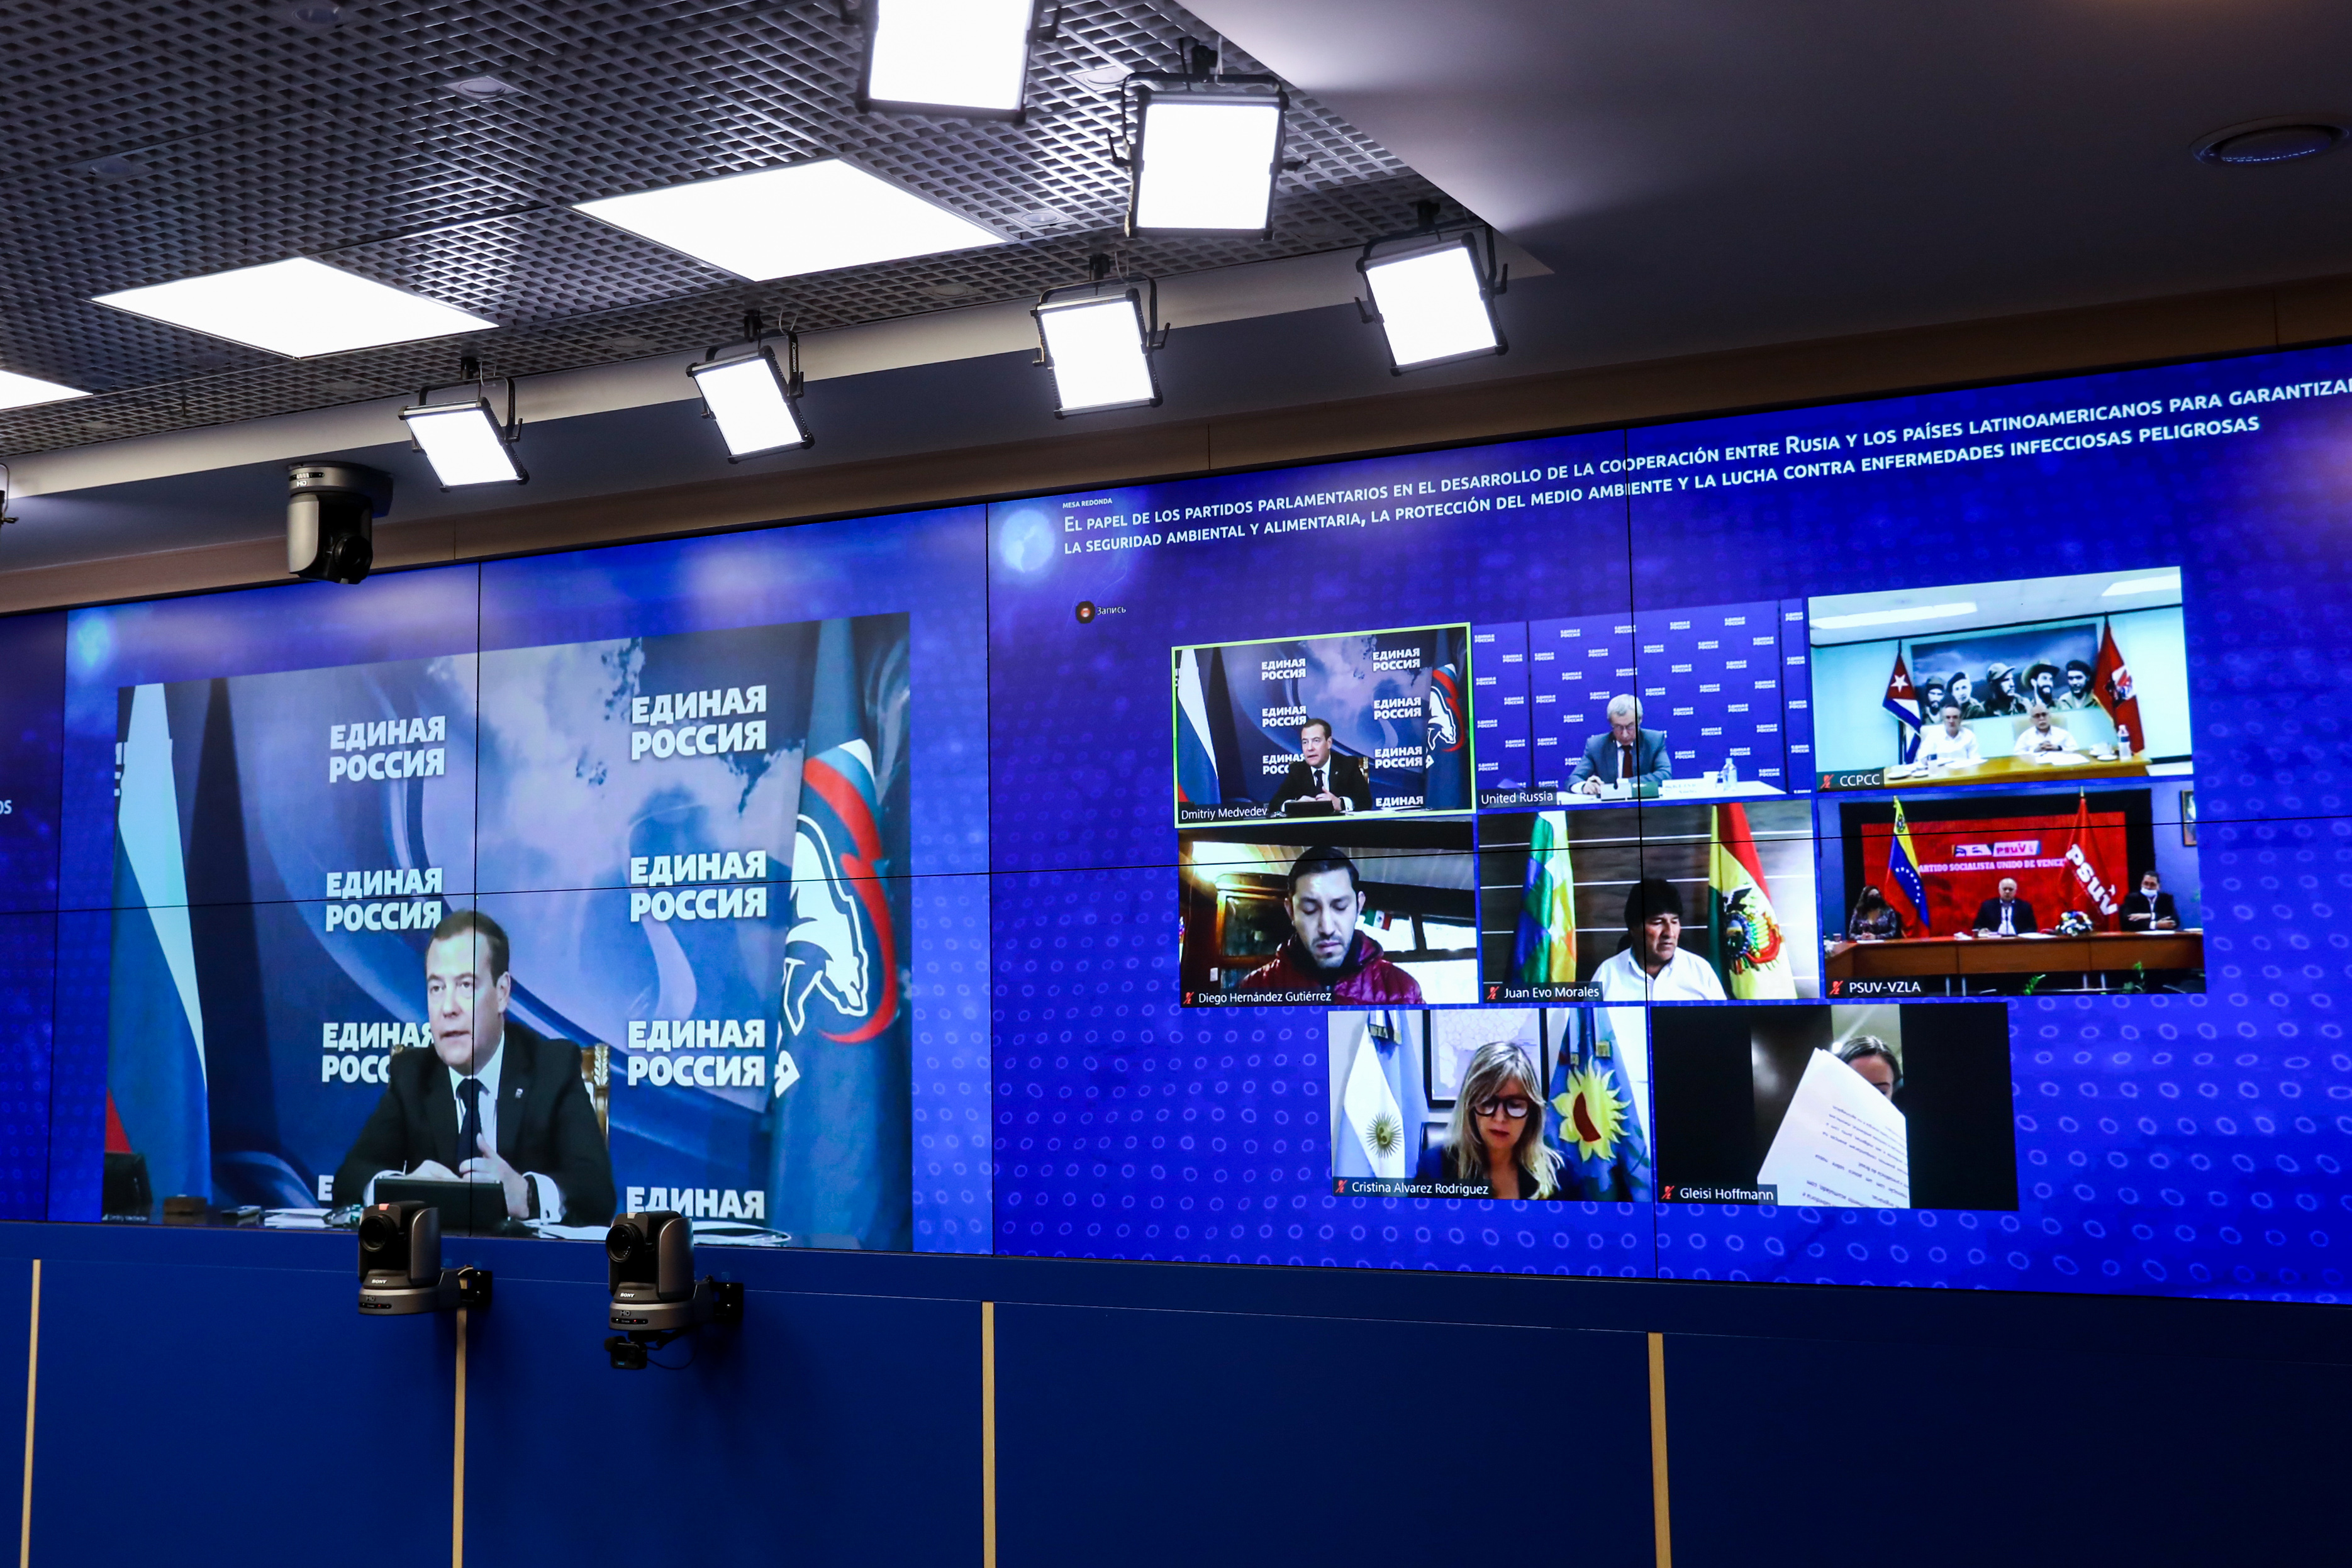 Дмитрий Медведев принял участие в межпартийном диалоге России и стран Латинской Америки